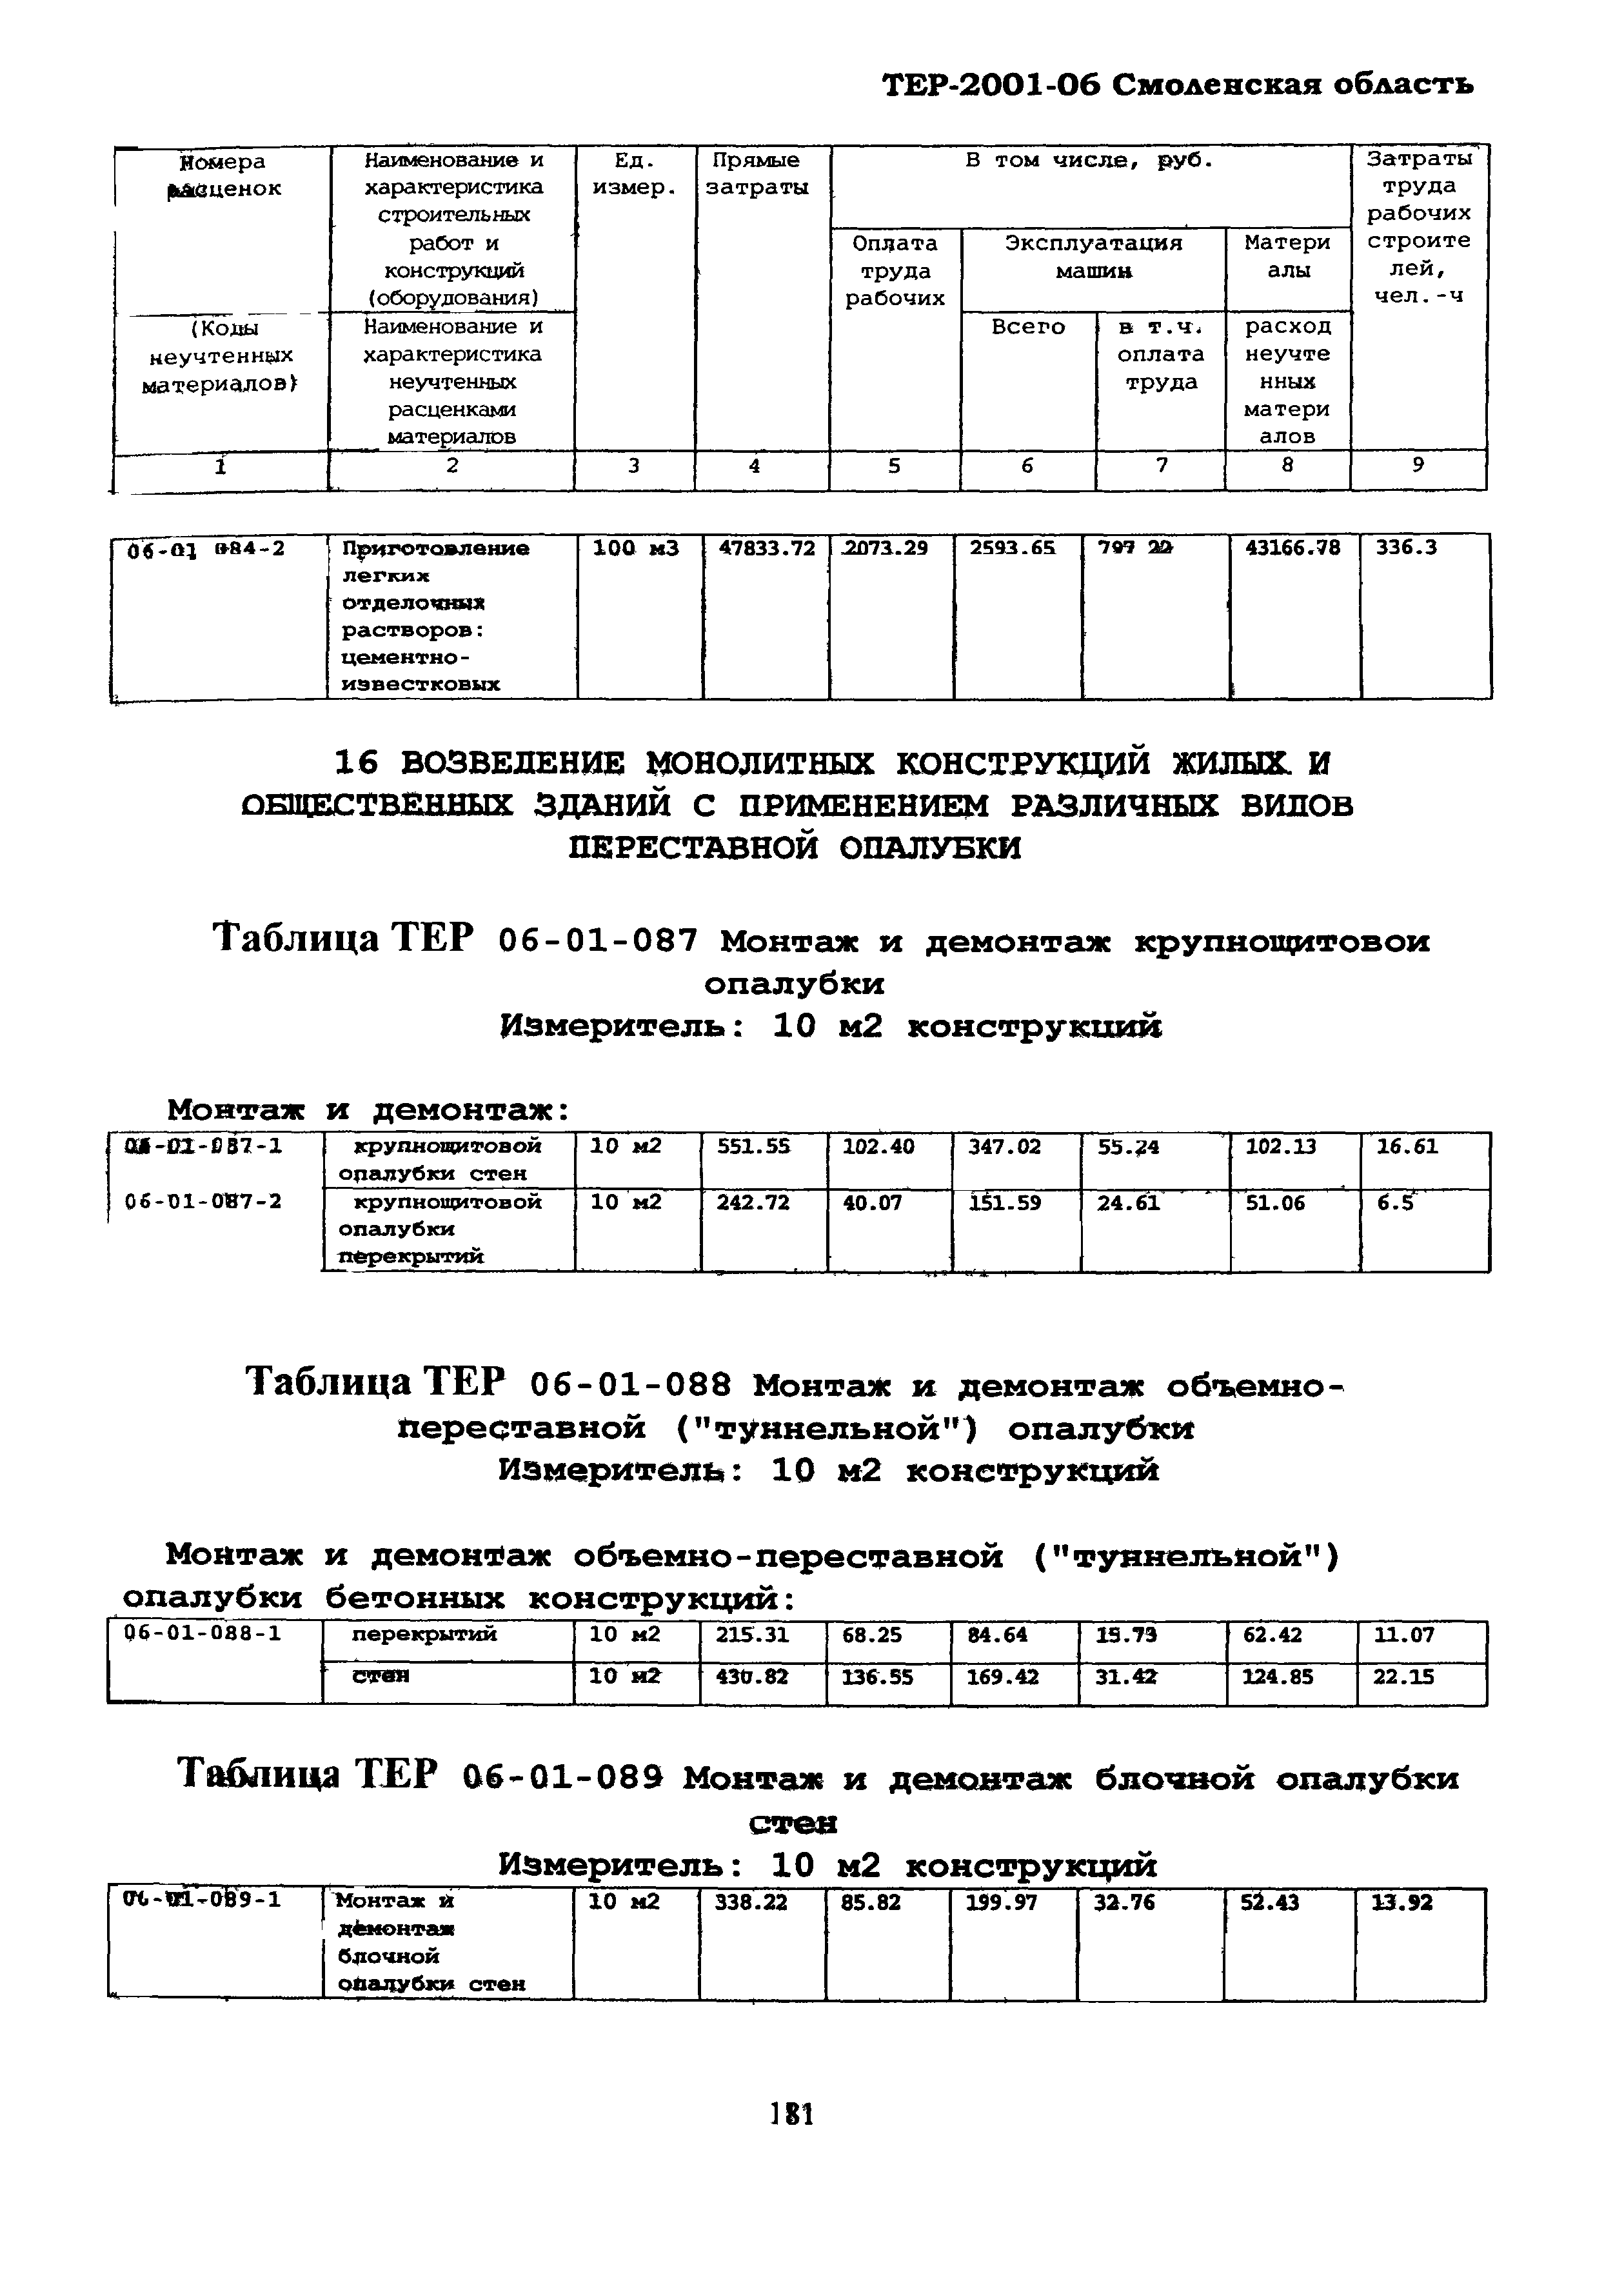 ТЕР Смоленская область 2001-06